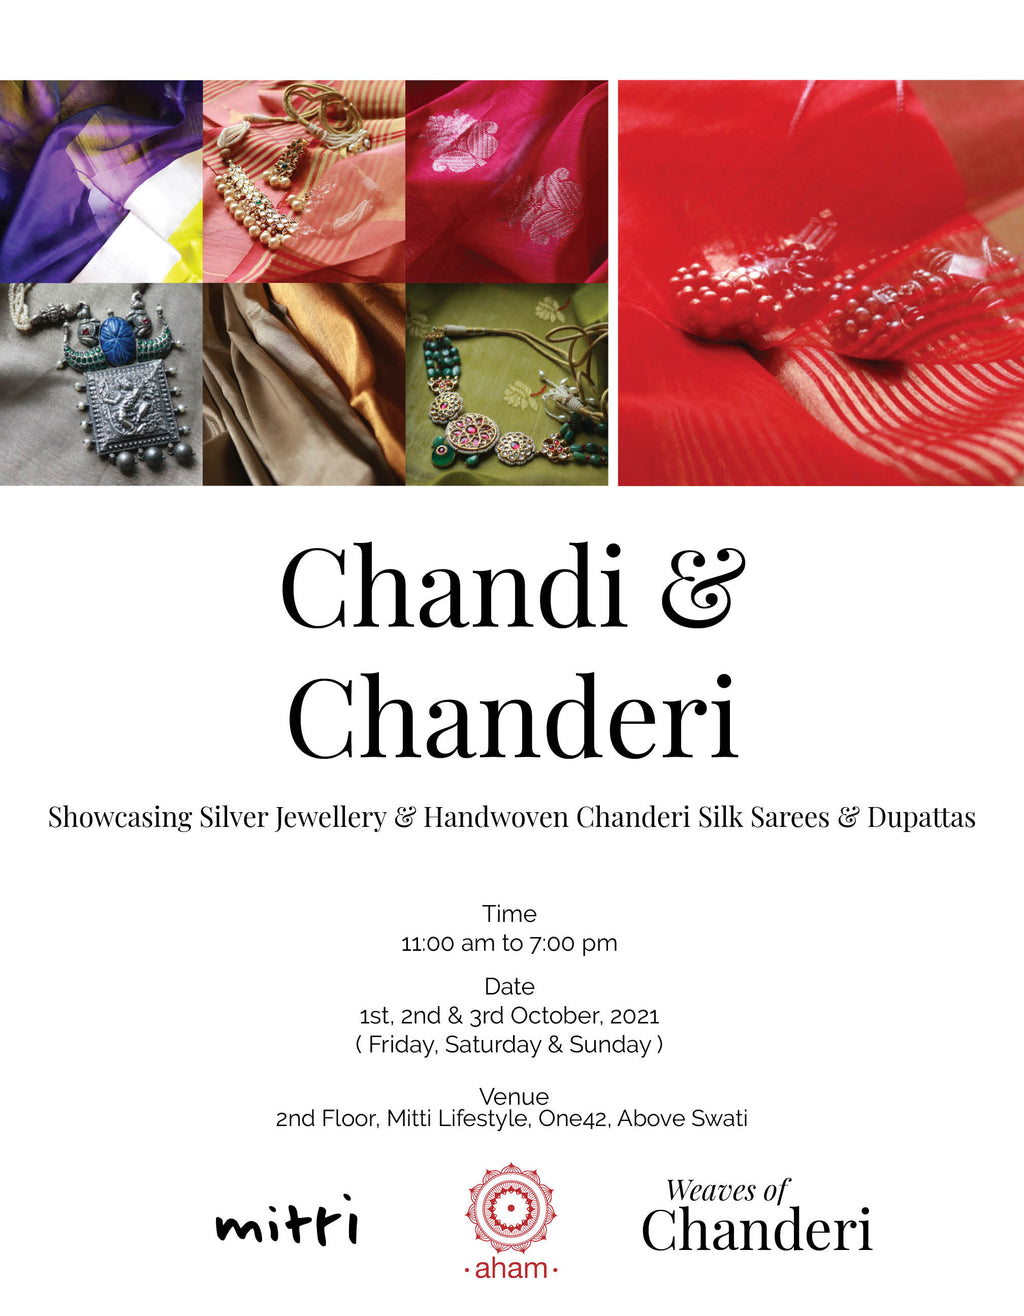 Chandi & Chanderi